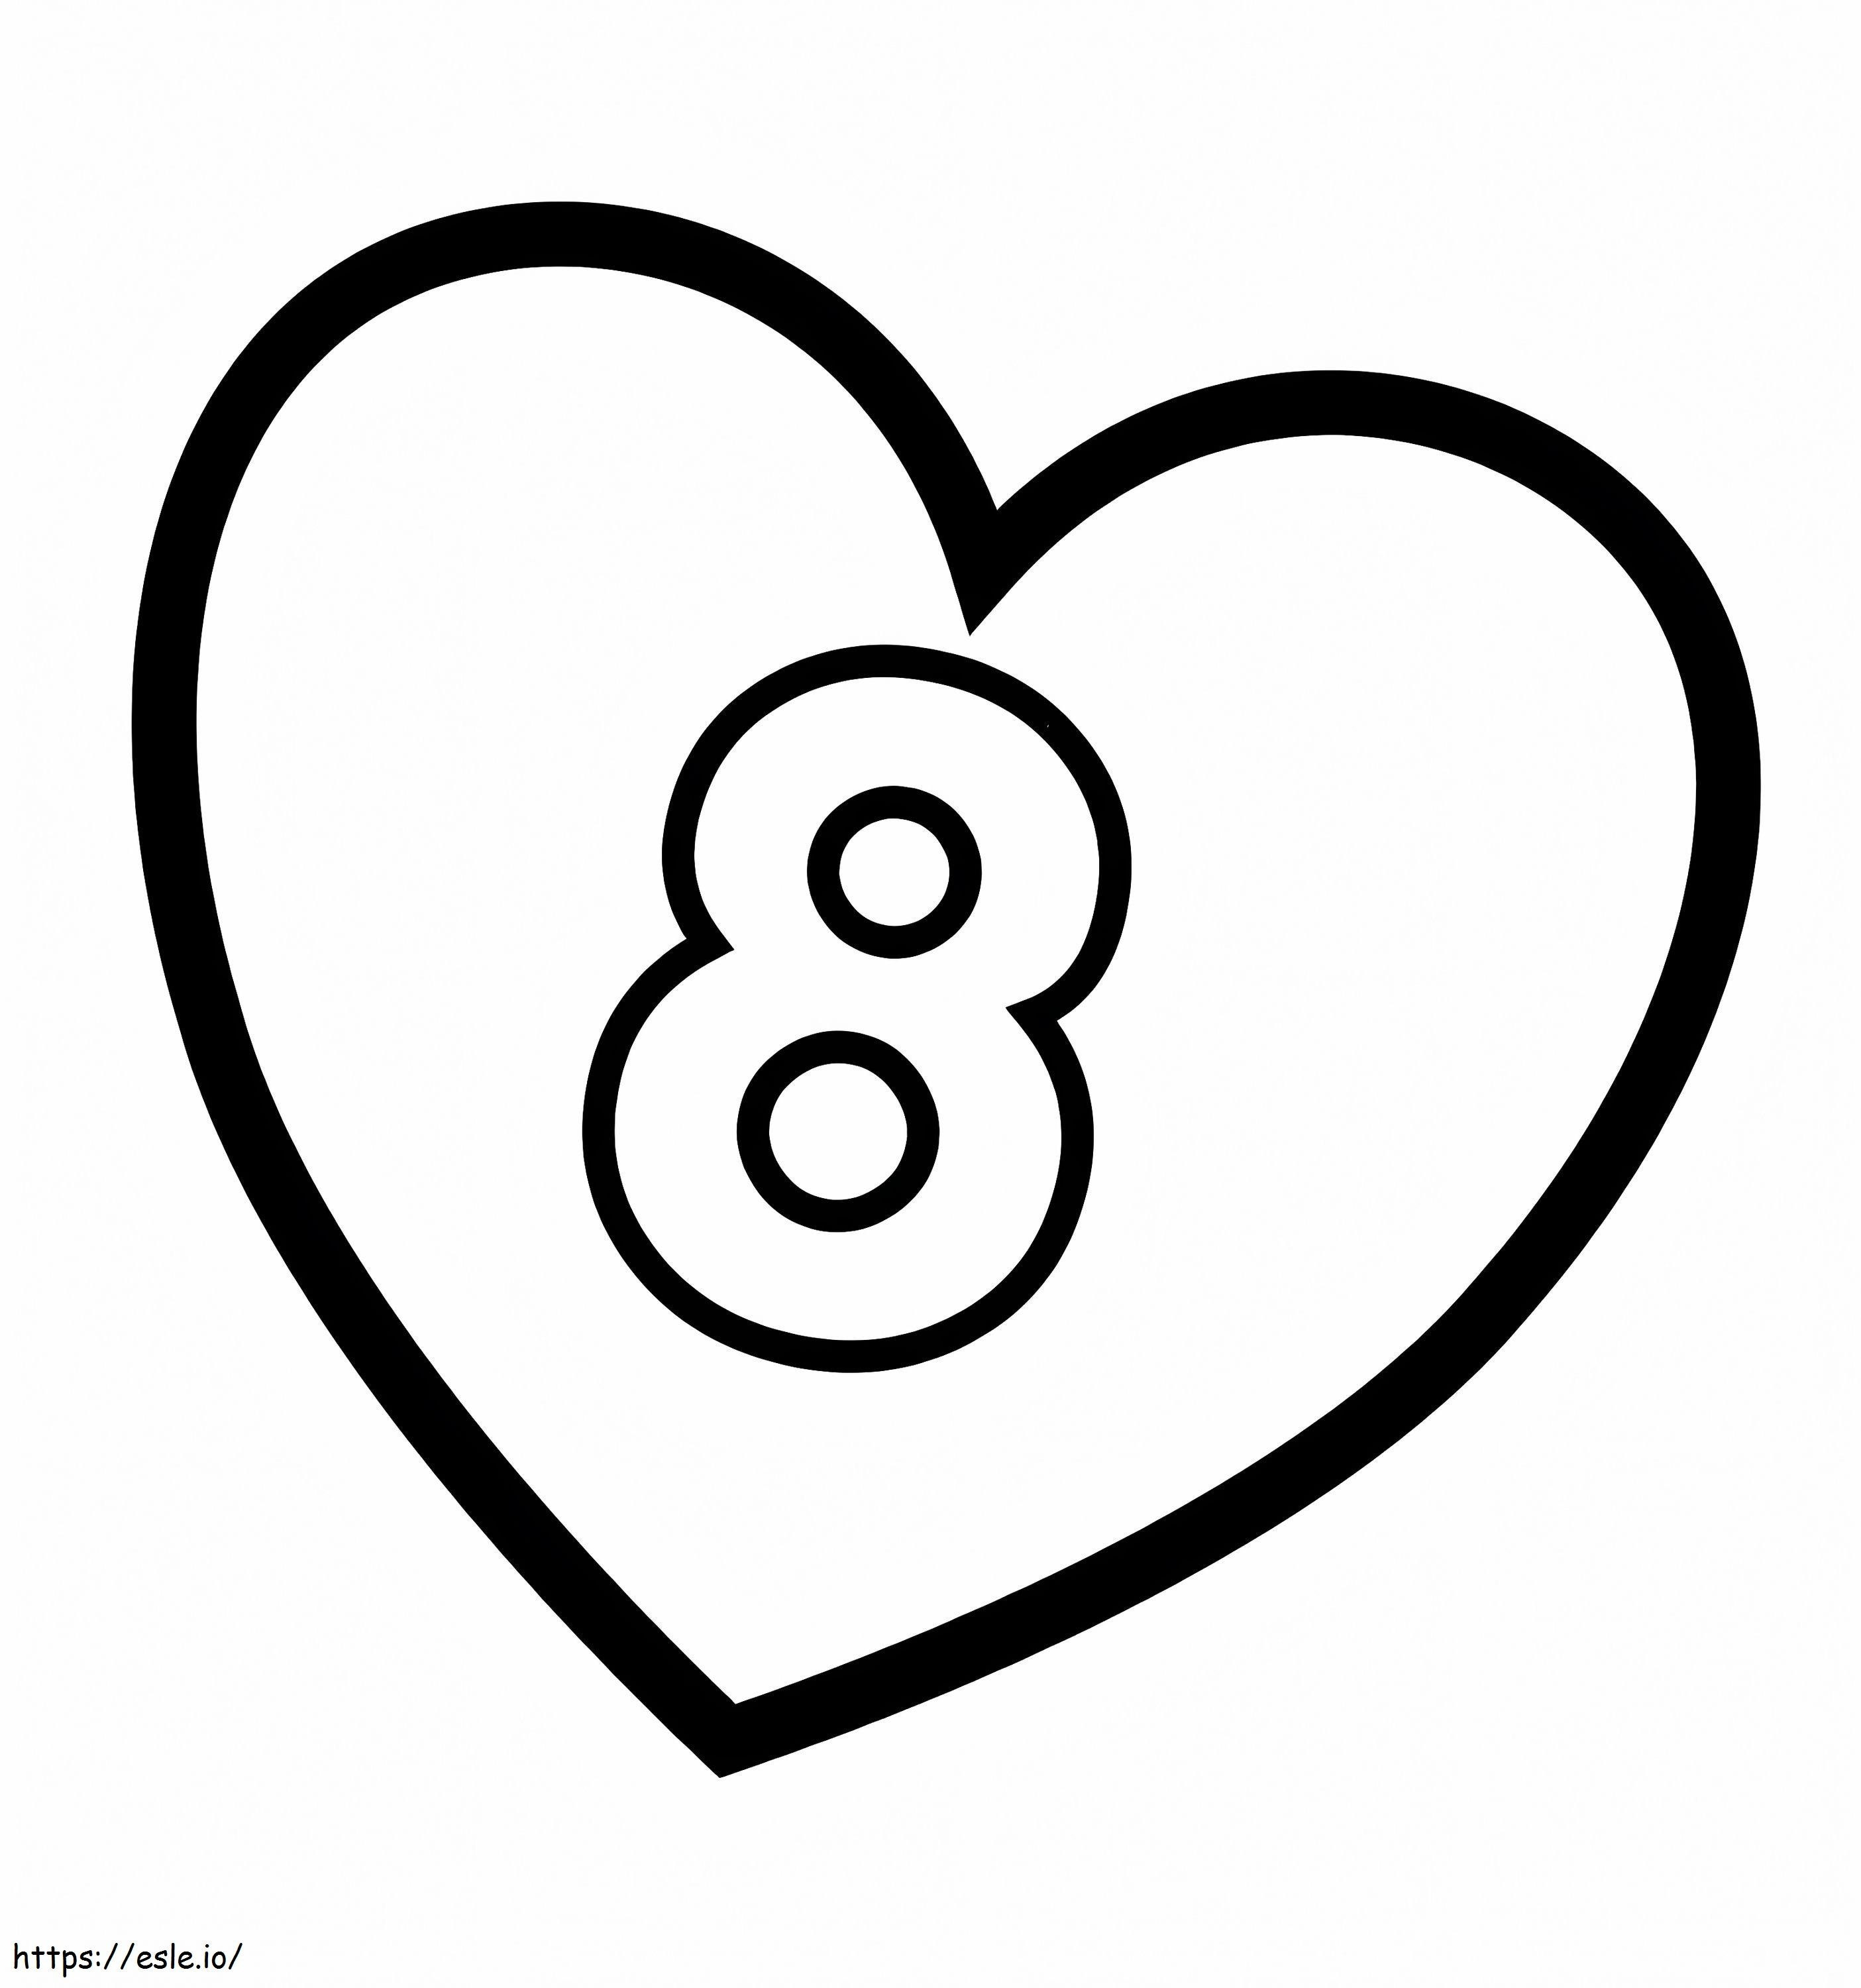 Numer 8 w sercu kolorowanka